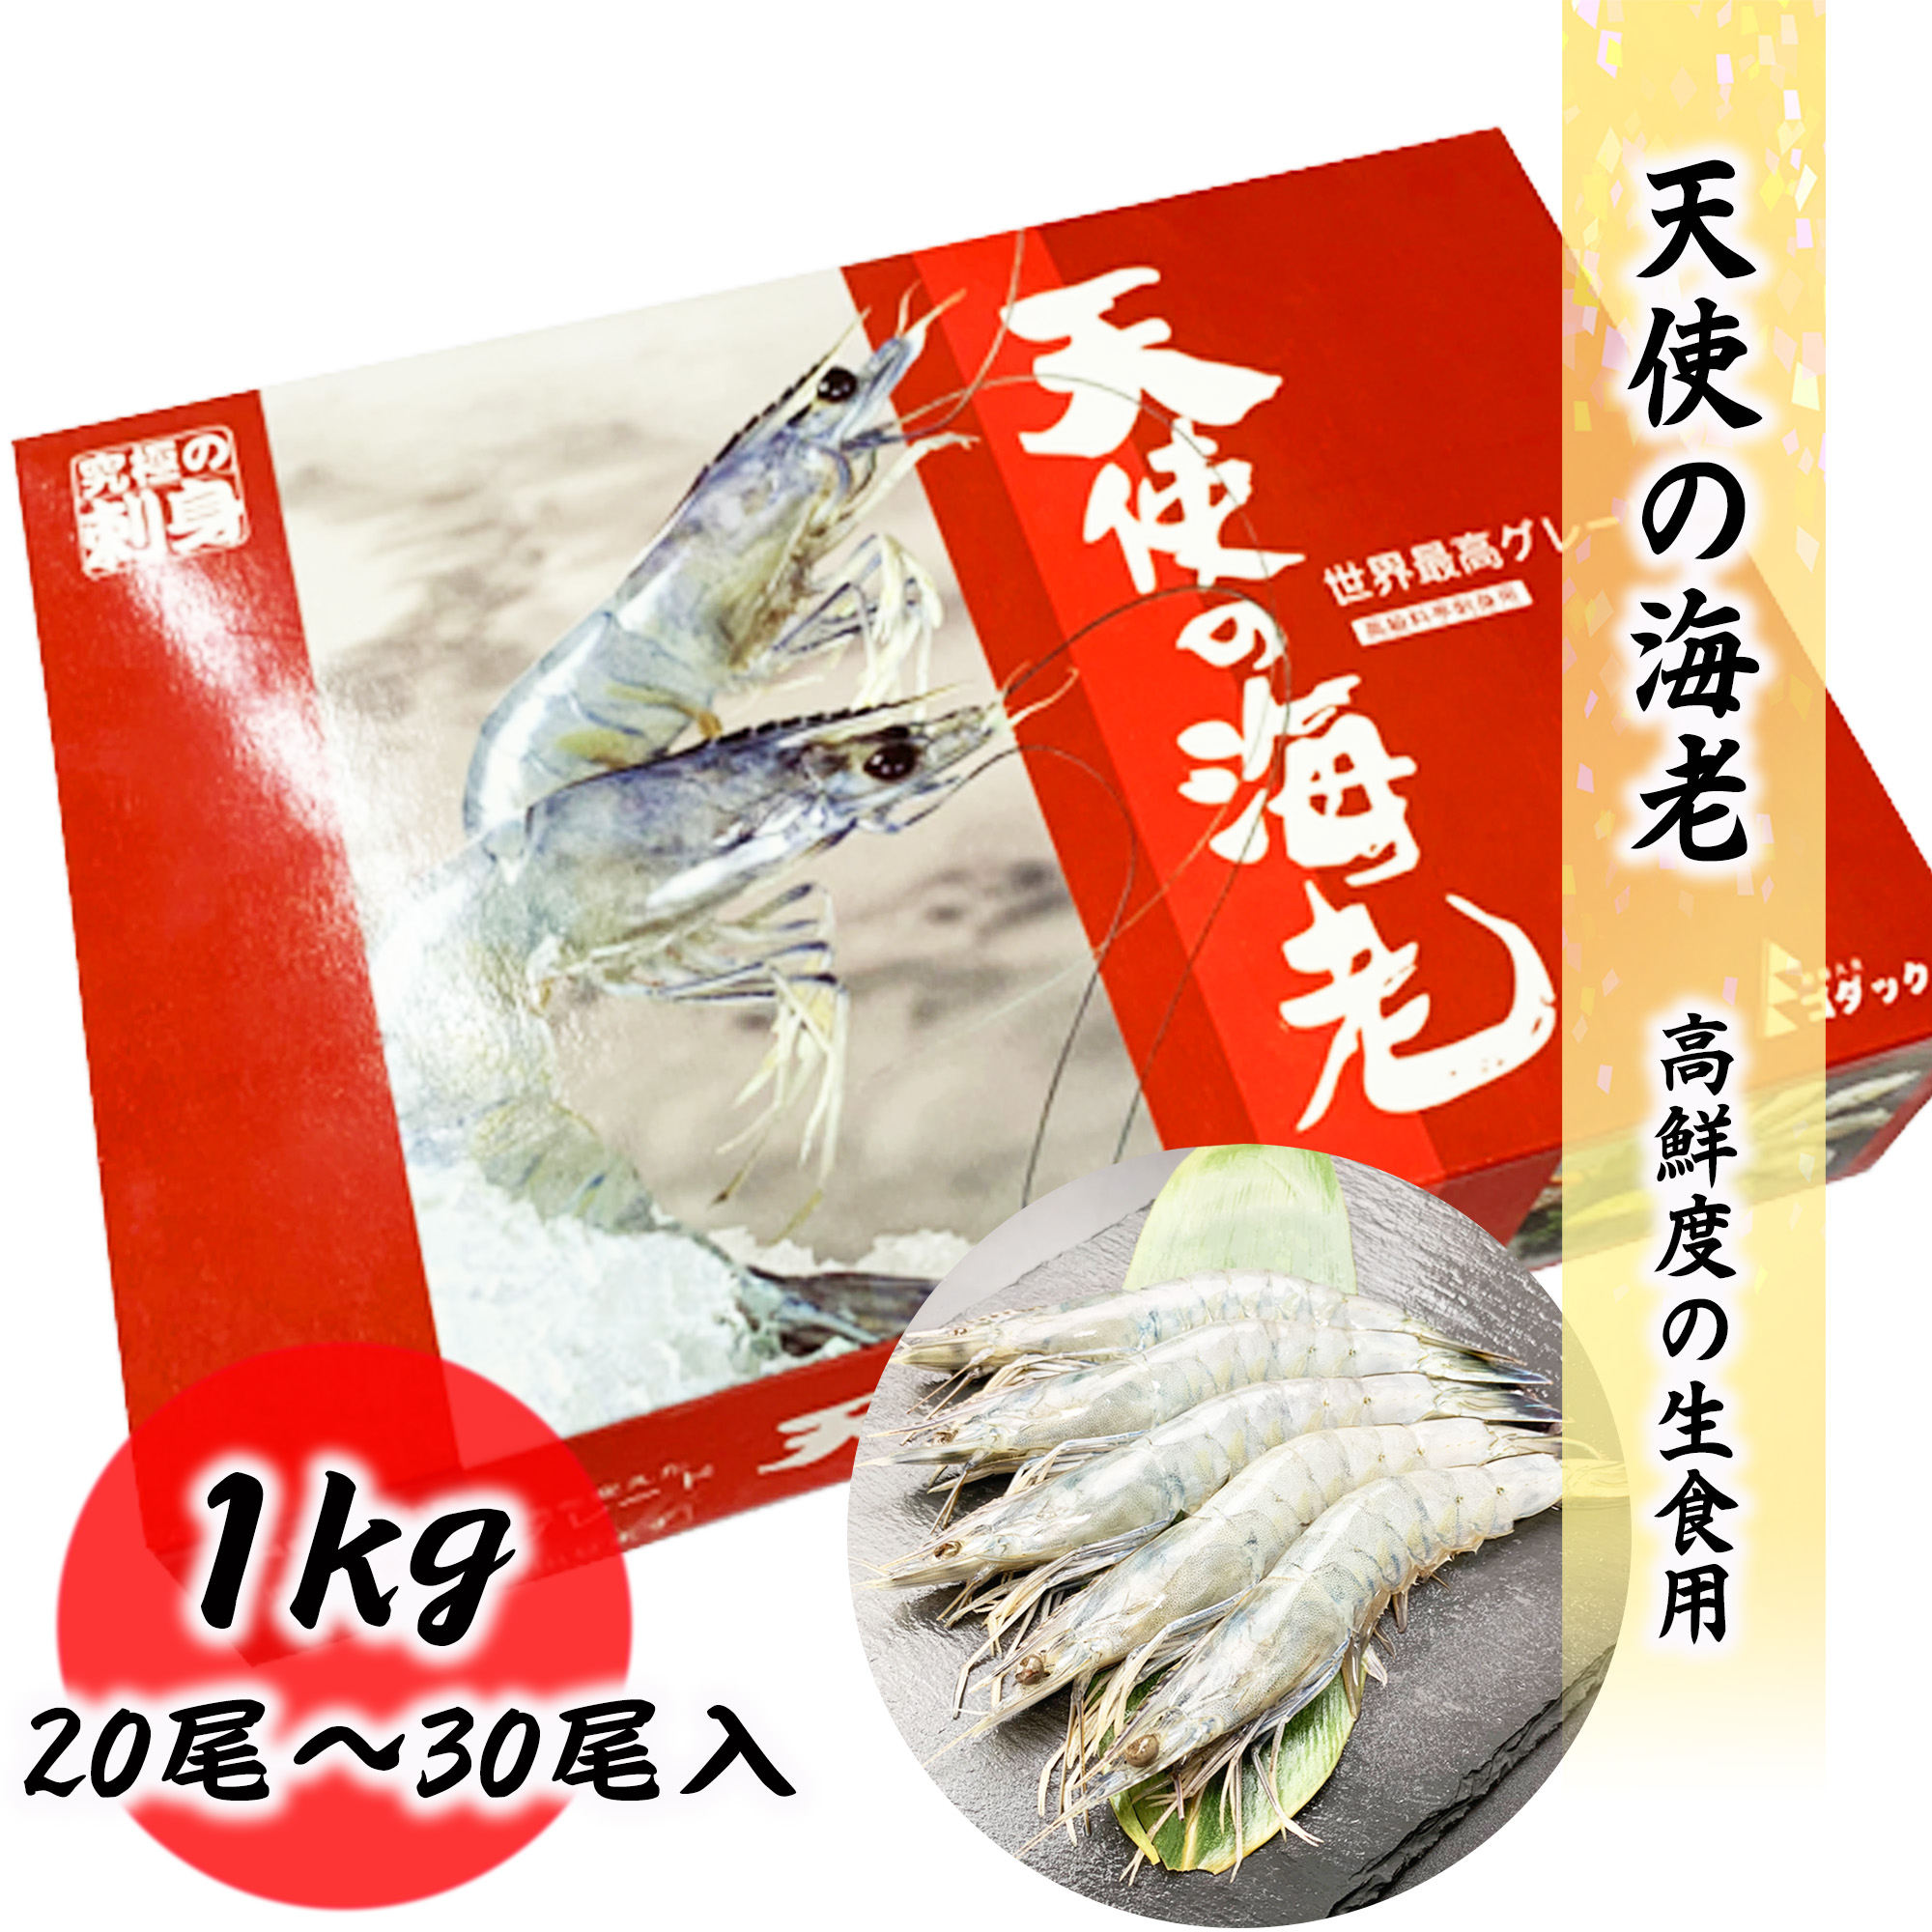  ангел. море .20/30 сырой еда для 1kg 20 хвост ~30 хвост ввод большой размер креветка море . sashimi ...... подарок подарок классификация подарок ..